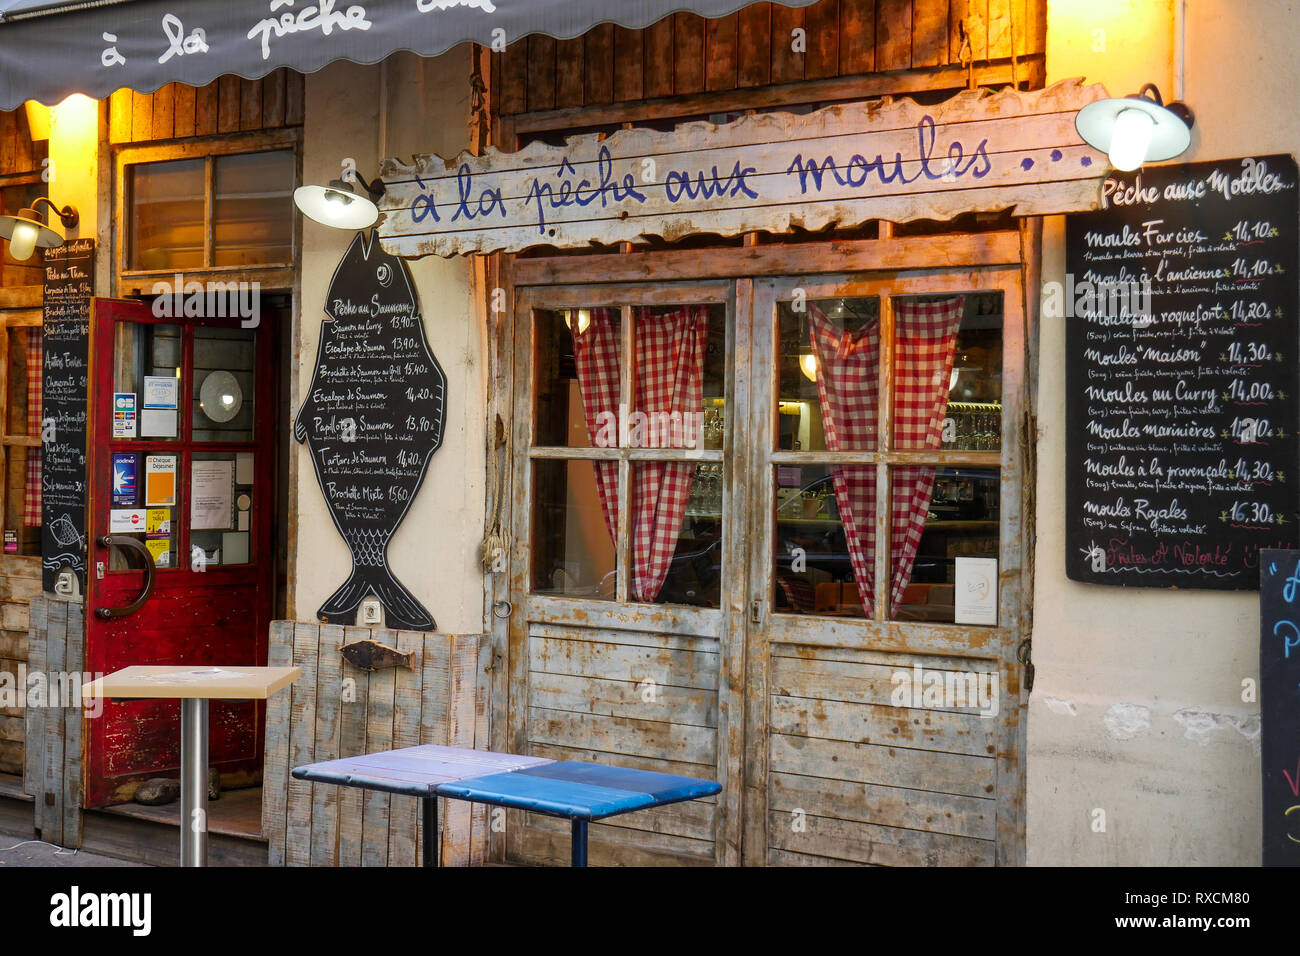 Fisch und Meeresfrüchte Restaurant, Rue des Marroniers, Lyon, Frankreich Stockfoto